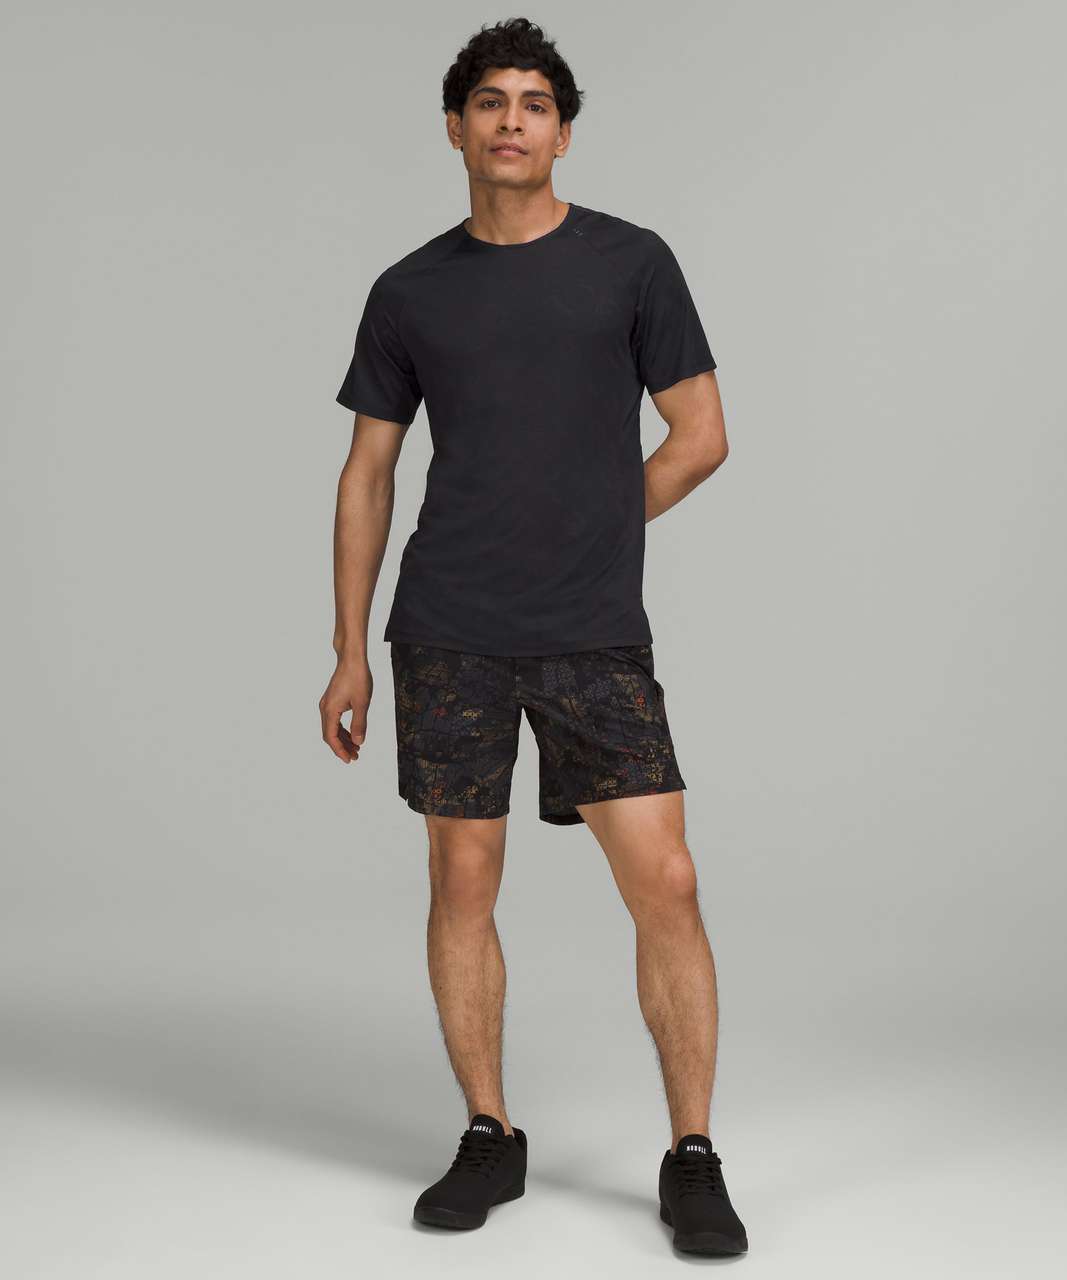 Men's Black Paisley Training Shorts  Shirt casual style, Breathable shorts,  Camouflage shorts